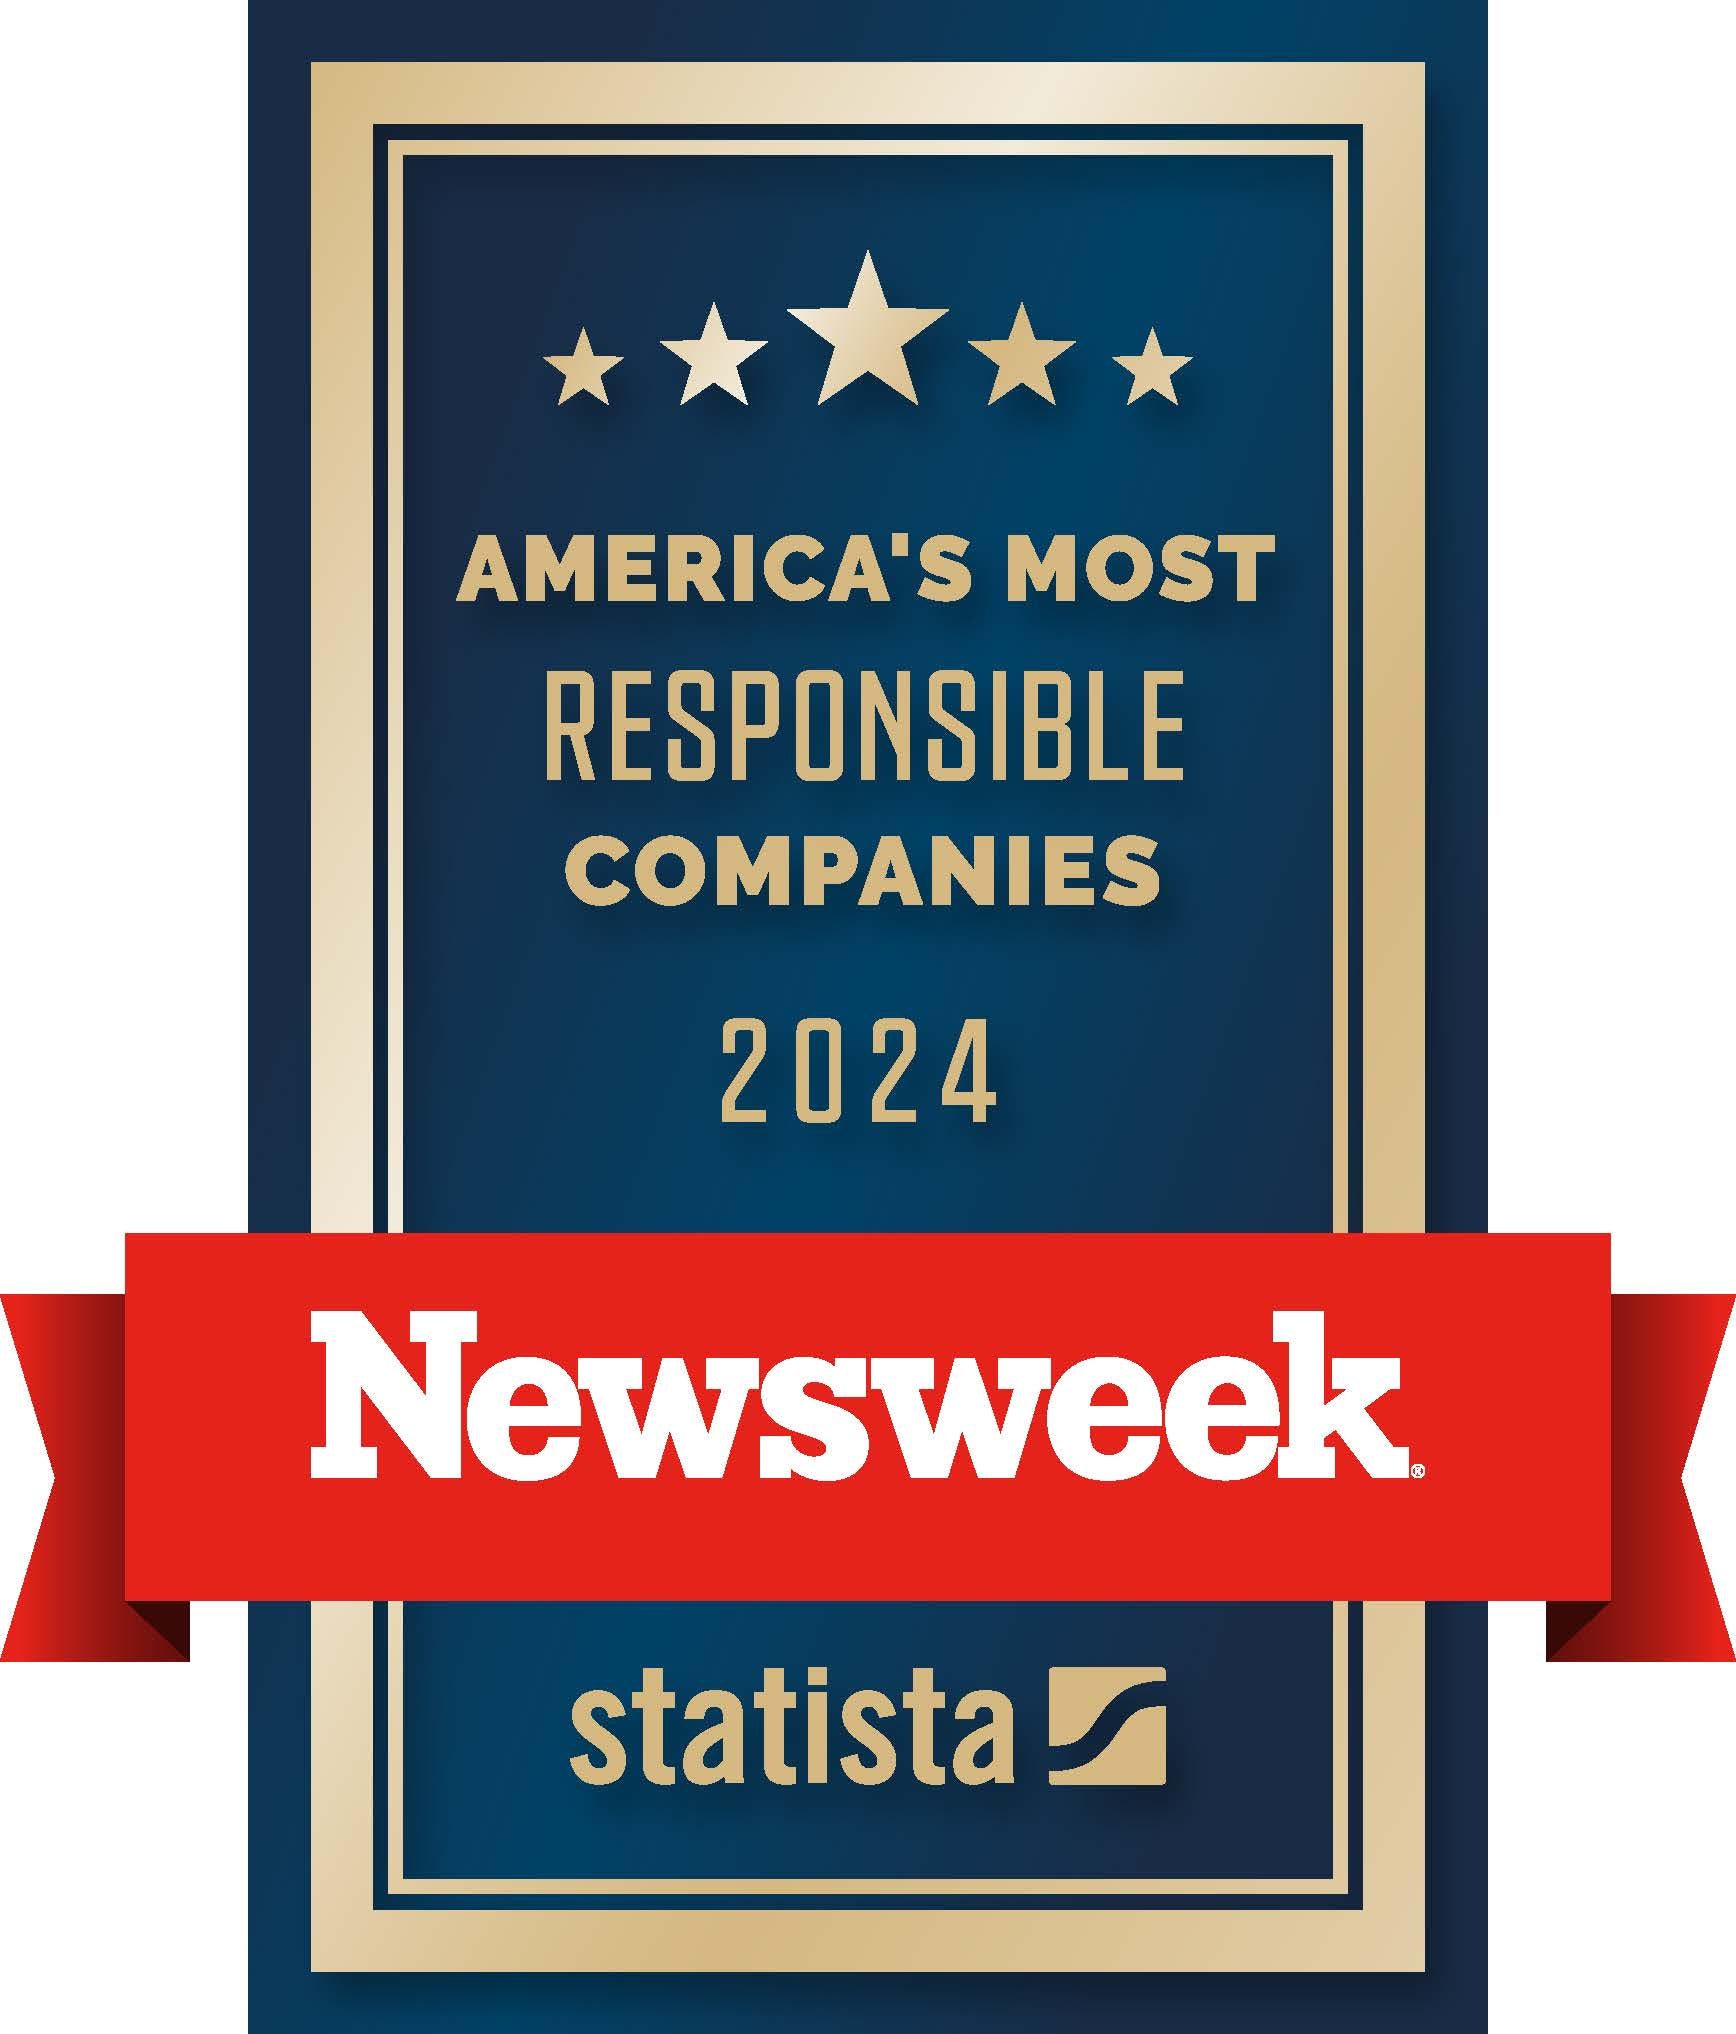 Newsweek - Vertical